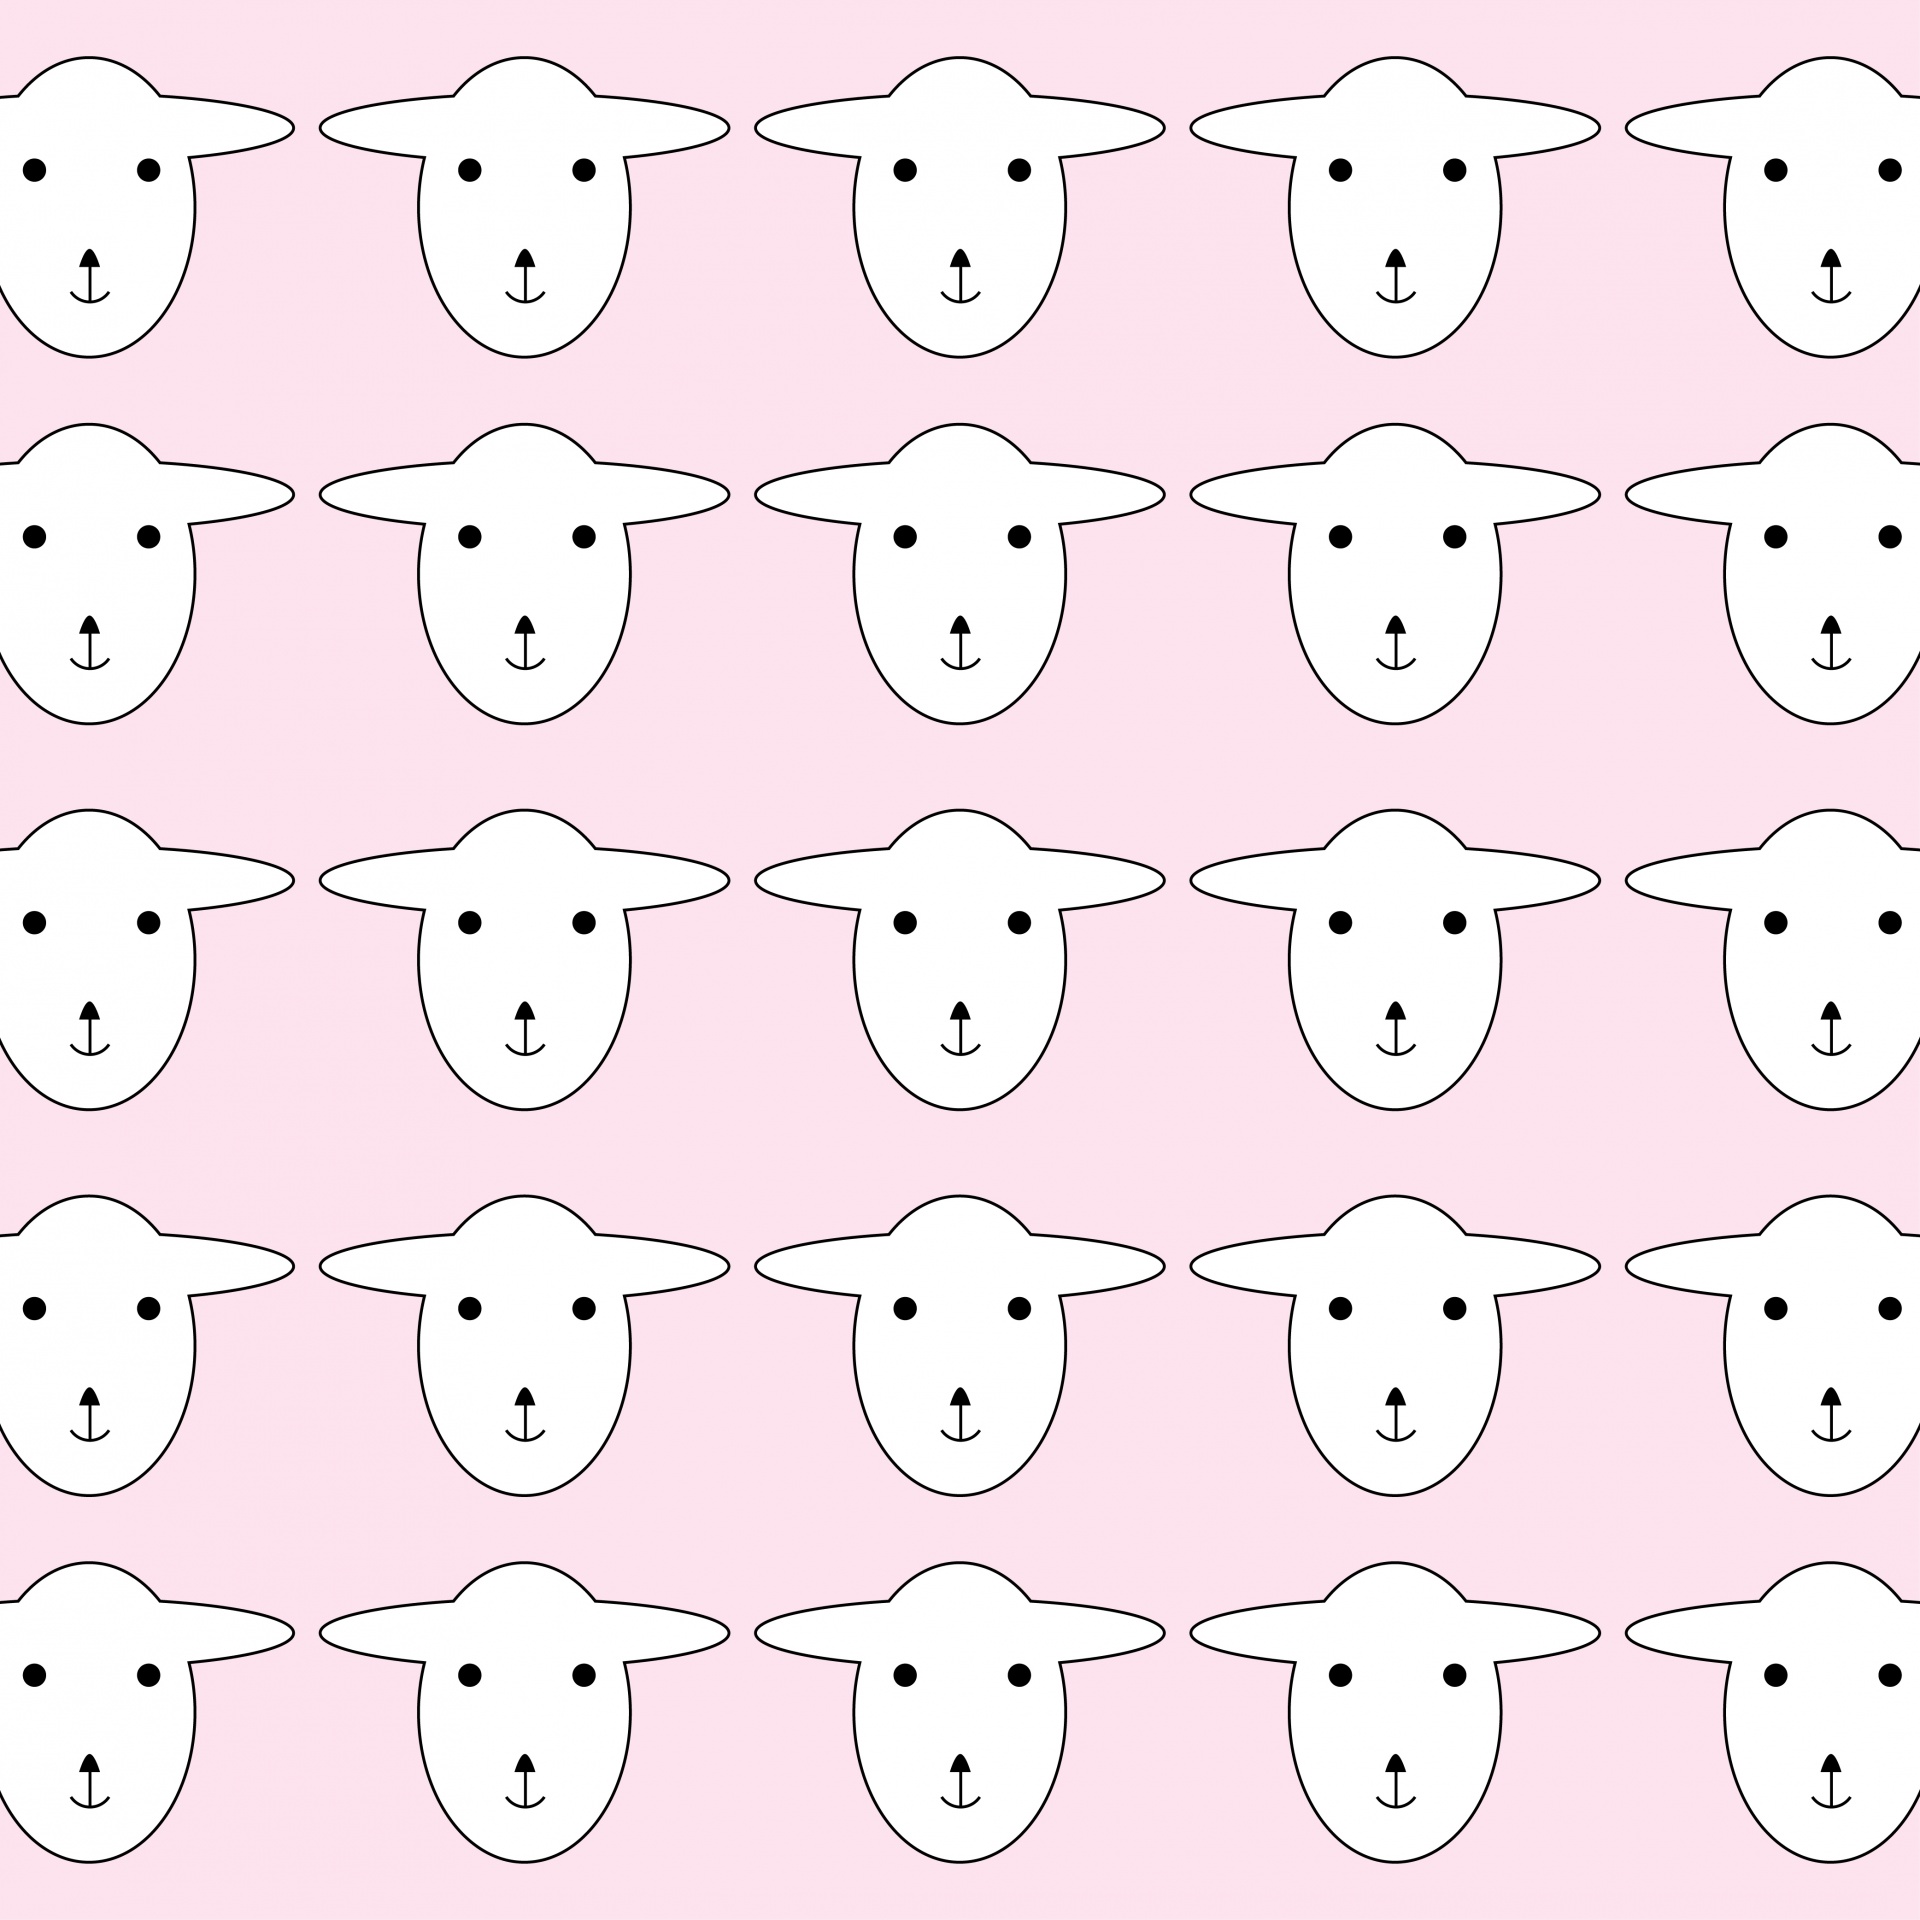 Sheep Wallpaper Pattern Pink